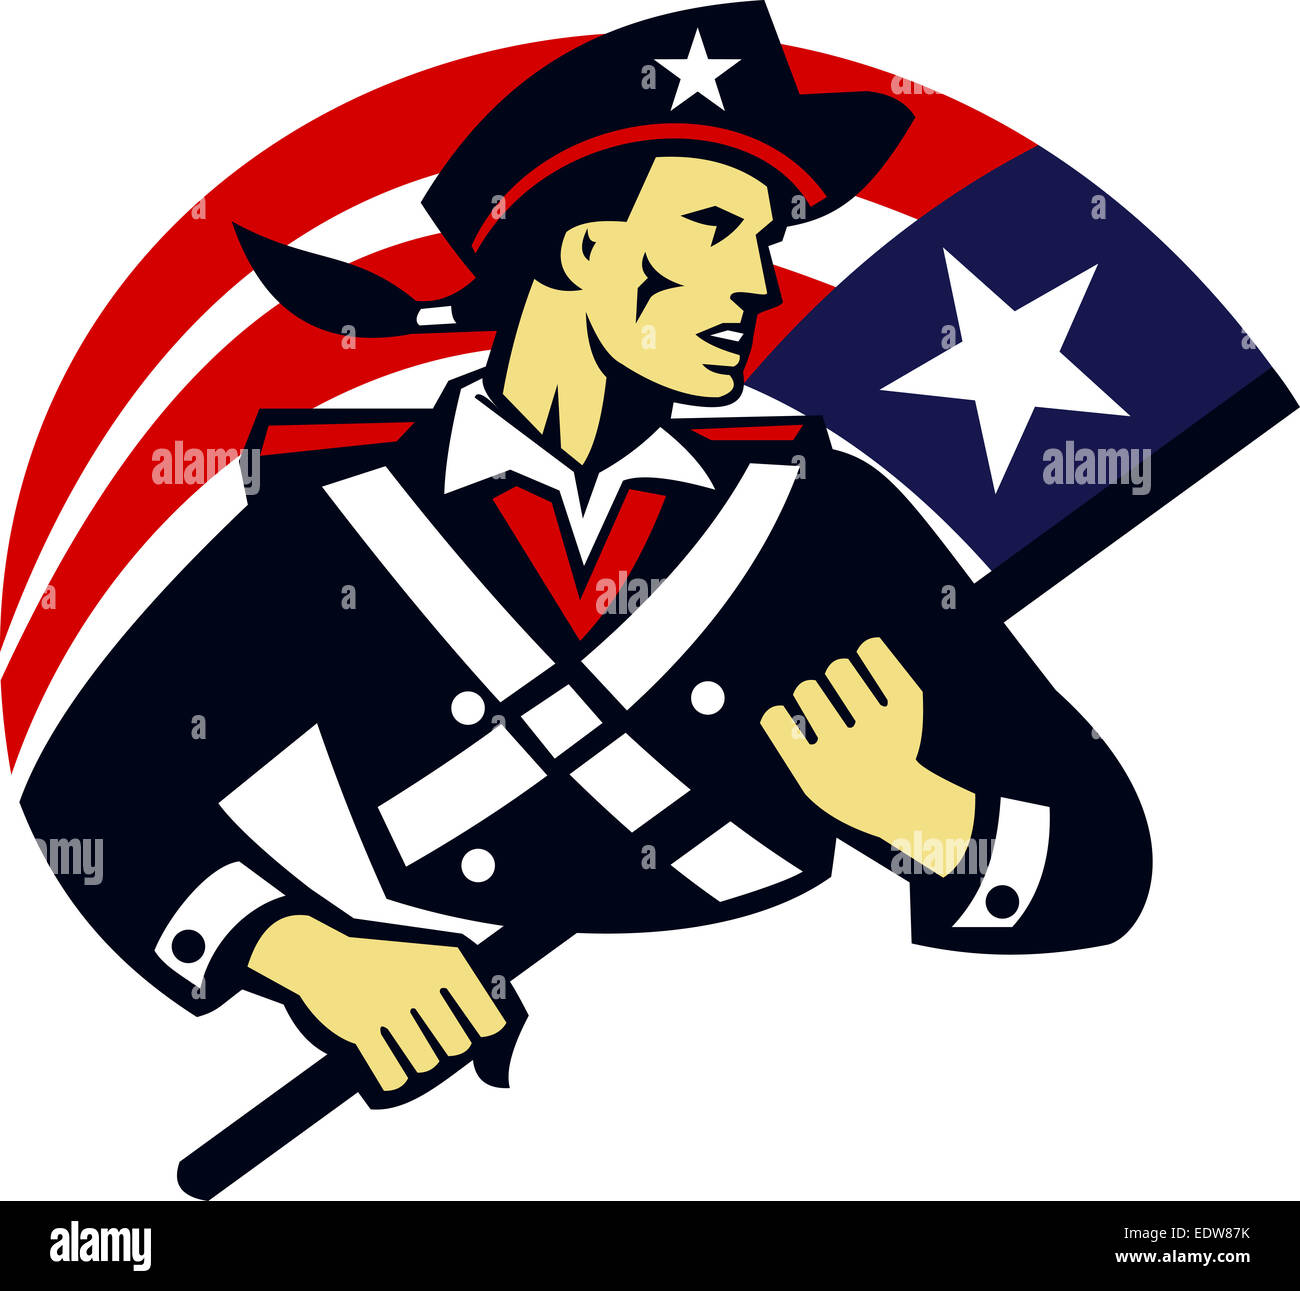 Illustration d'un patriote américain soldat révolutionnaire milice minuteman holding usa stars and stripes flag fait en style rétro. Banque D'Images